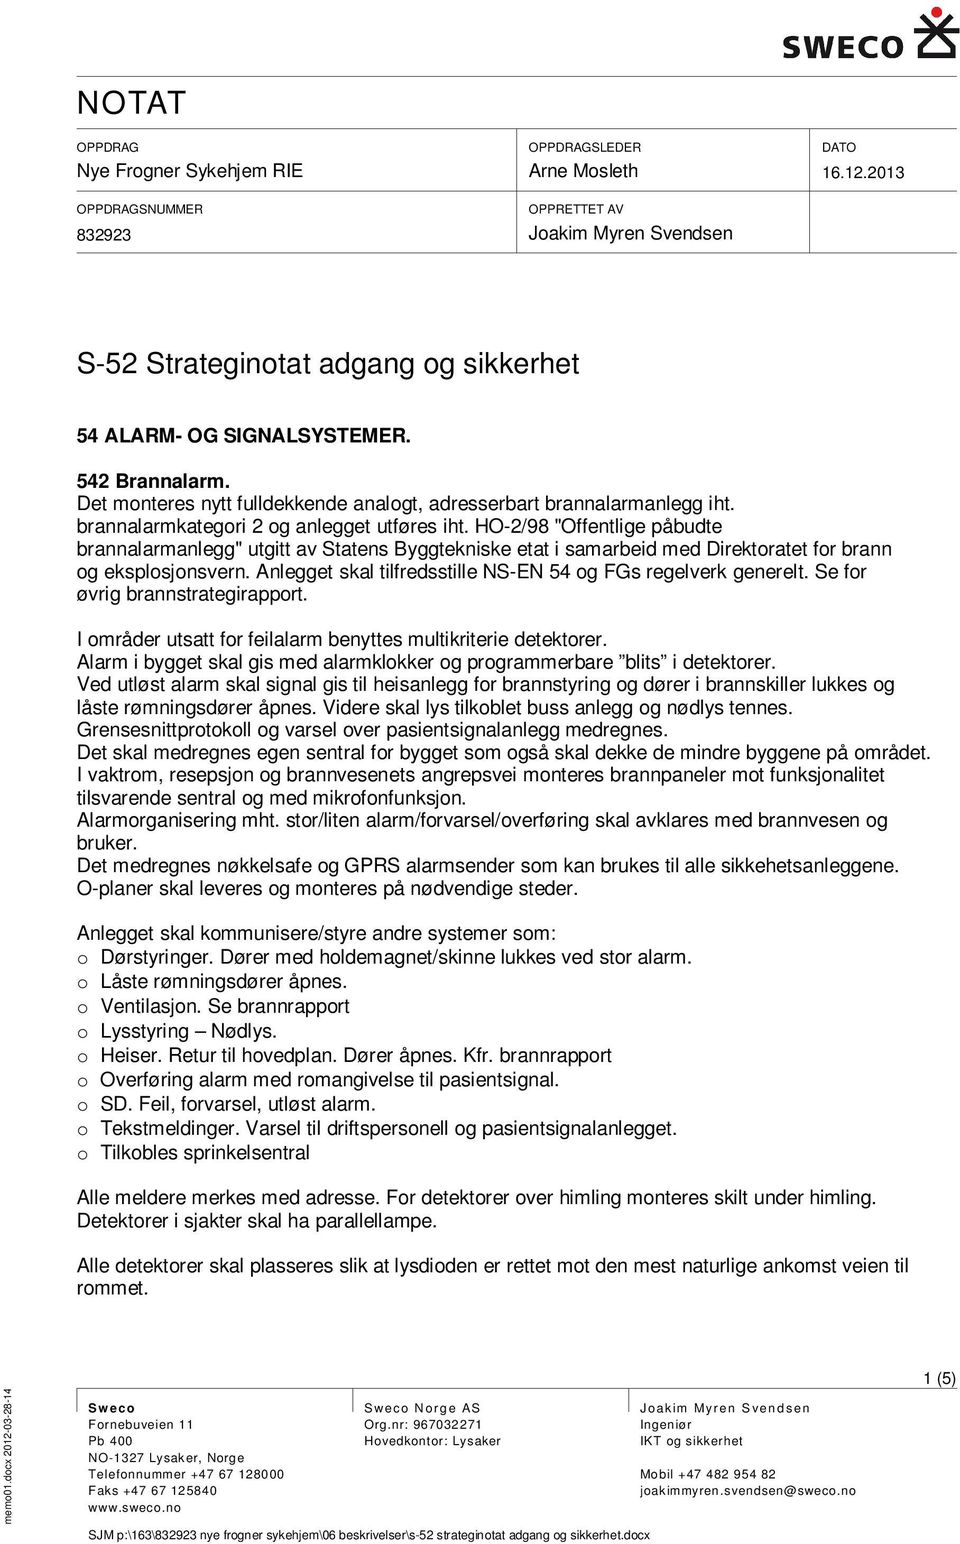 HO-2/98 "Offentlige påbudte brannalarmanlegg" utgitt av Statens Byggtekniske etat i samarbeid med Direktoratet for brann og eksplosjonsvern.